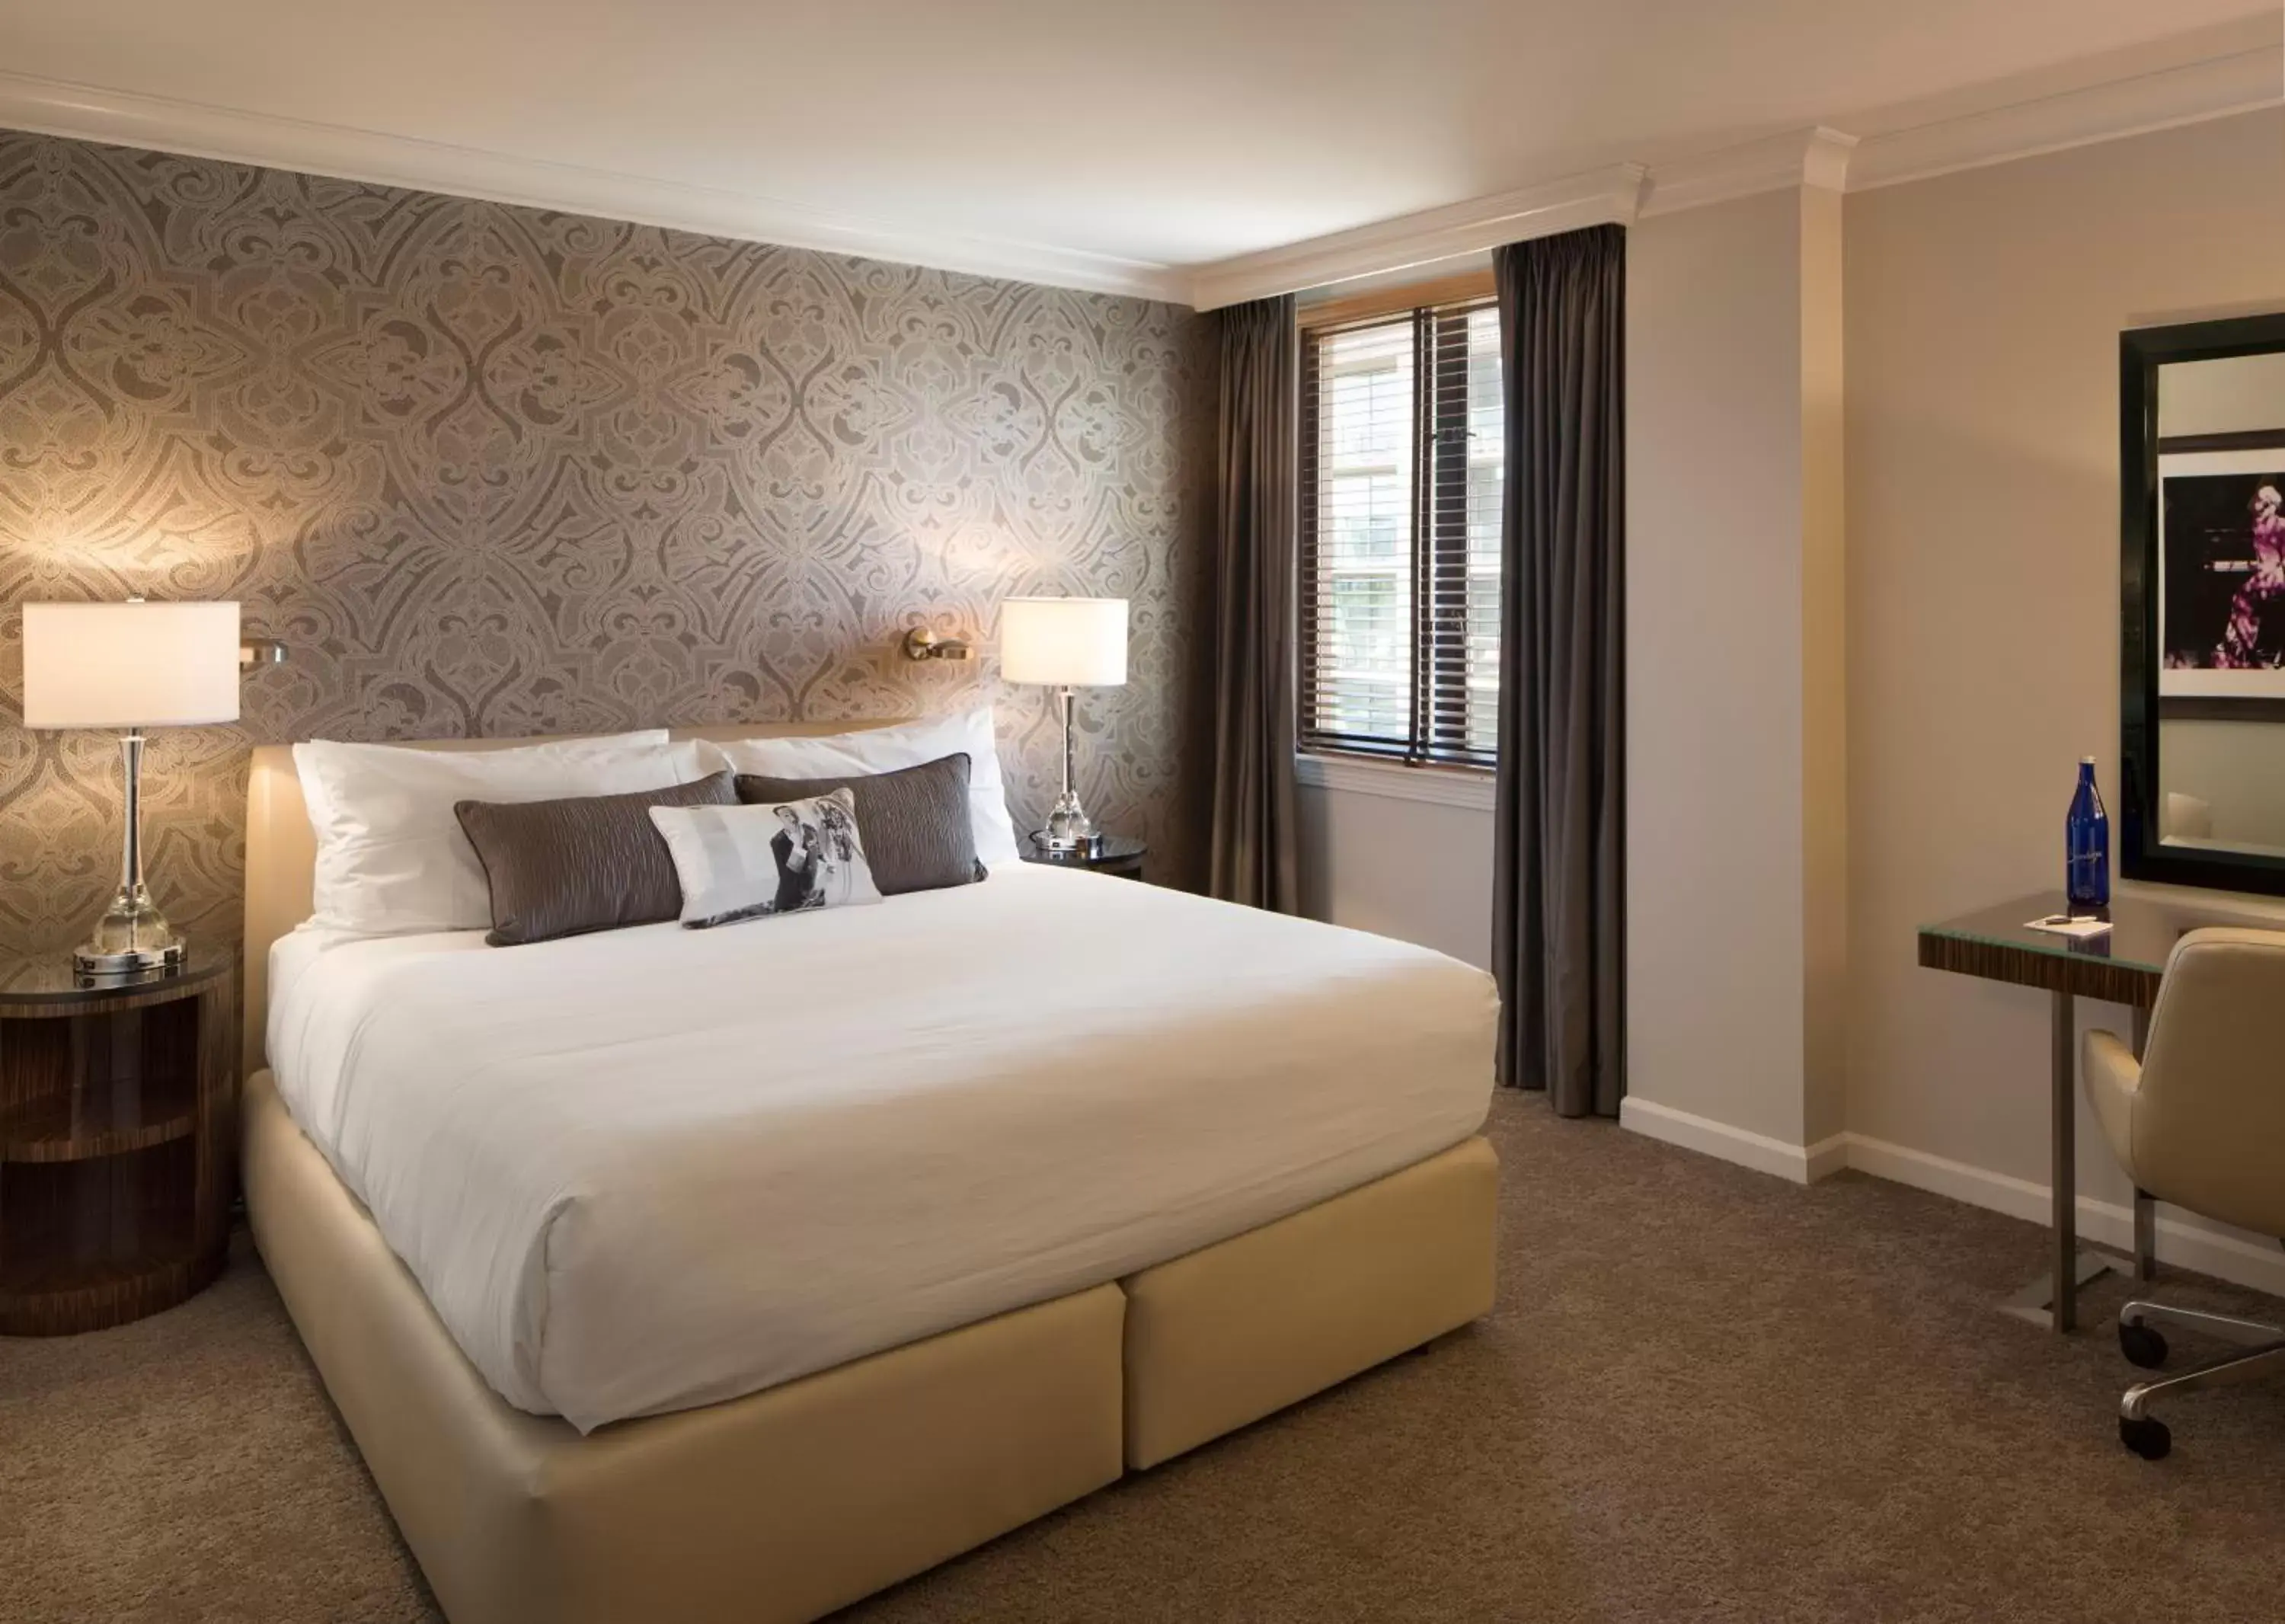 King Room in Hotel De Anza, a Destination by Hyatt Hotel